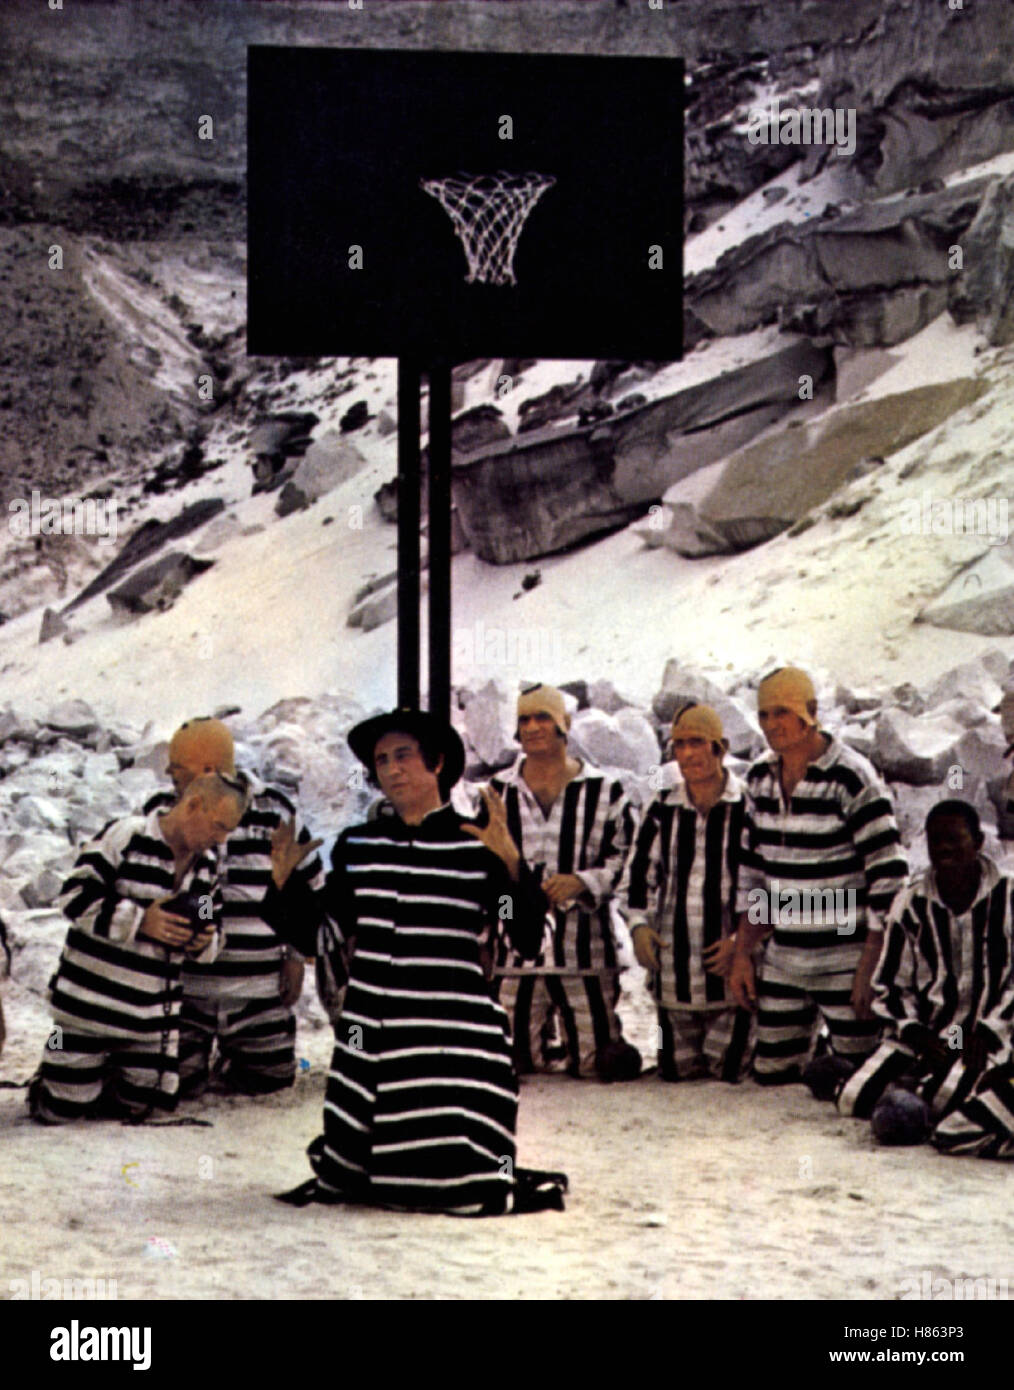 Der Harte mit dem weichen Keks, (LA GRANDE MAFFIA) F-IT 1971, Regie: Philippe Clair, Szene, Stichwort: Sträflinge, Baloncesto Foto de stock